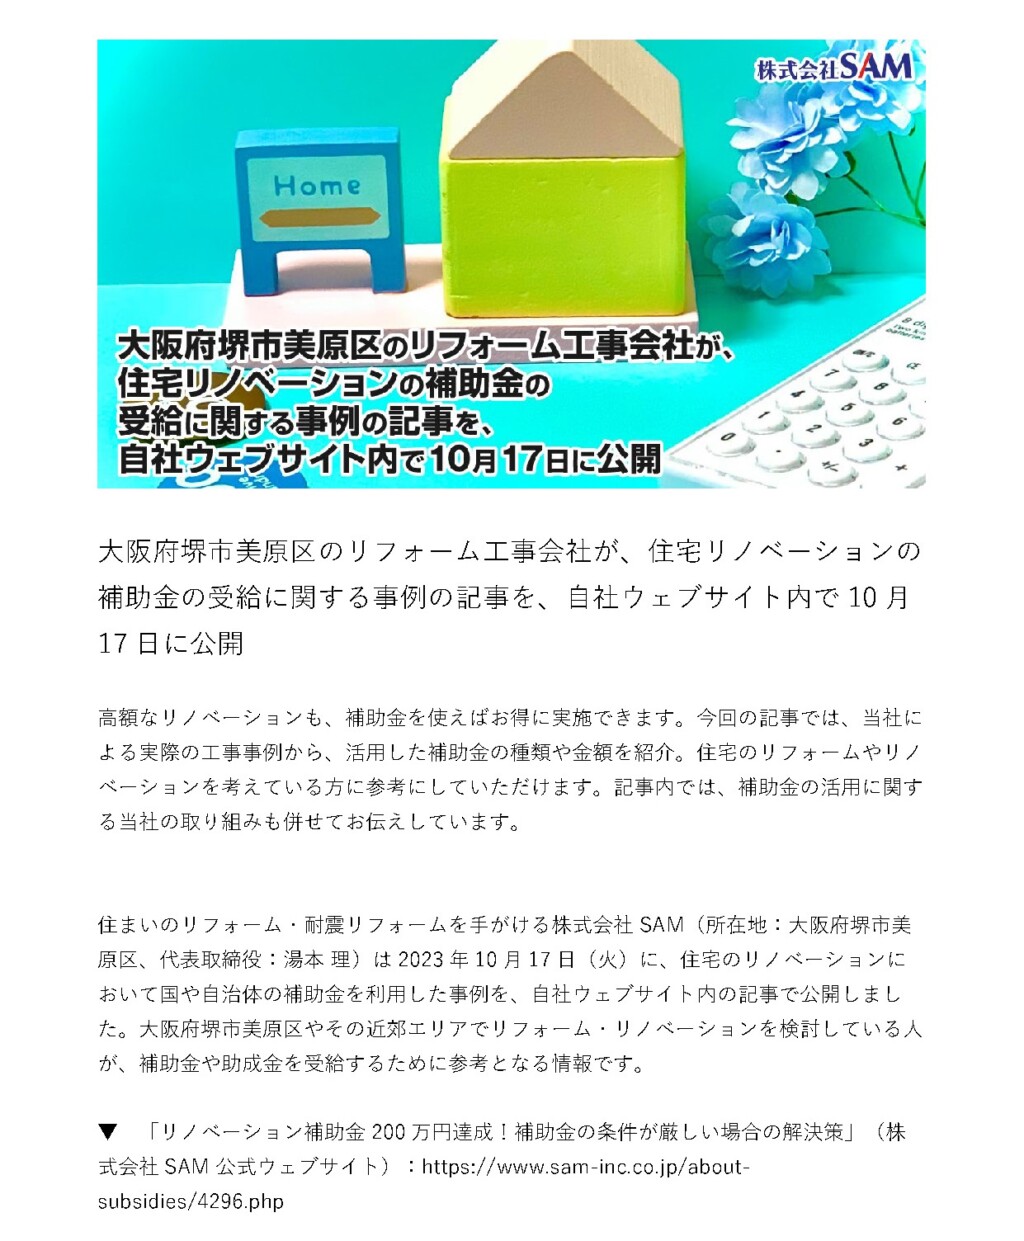 大阪府堺市美原区のリフォーム工事会社が、住宅リノベーションの補助金の需給に関する事例の記事を、自社ウェブサイト内で10月17日に公開